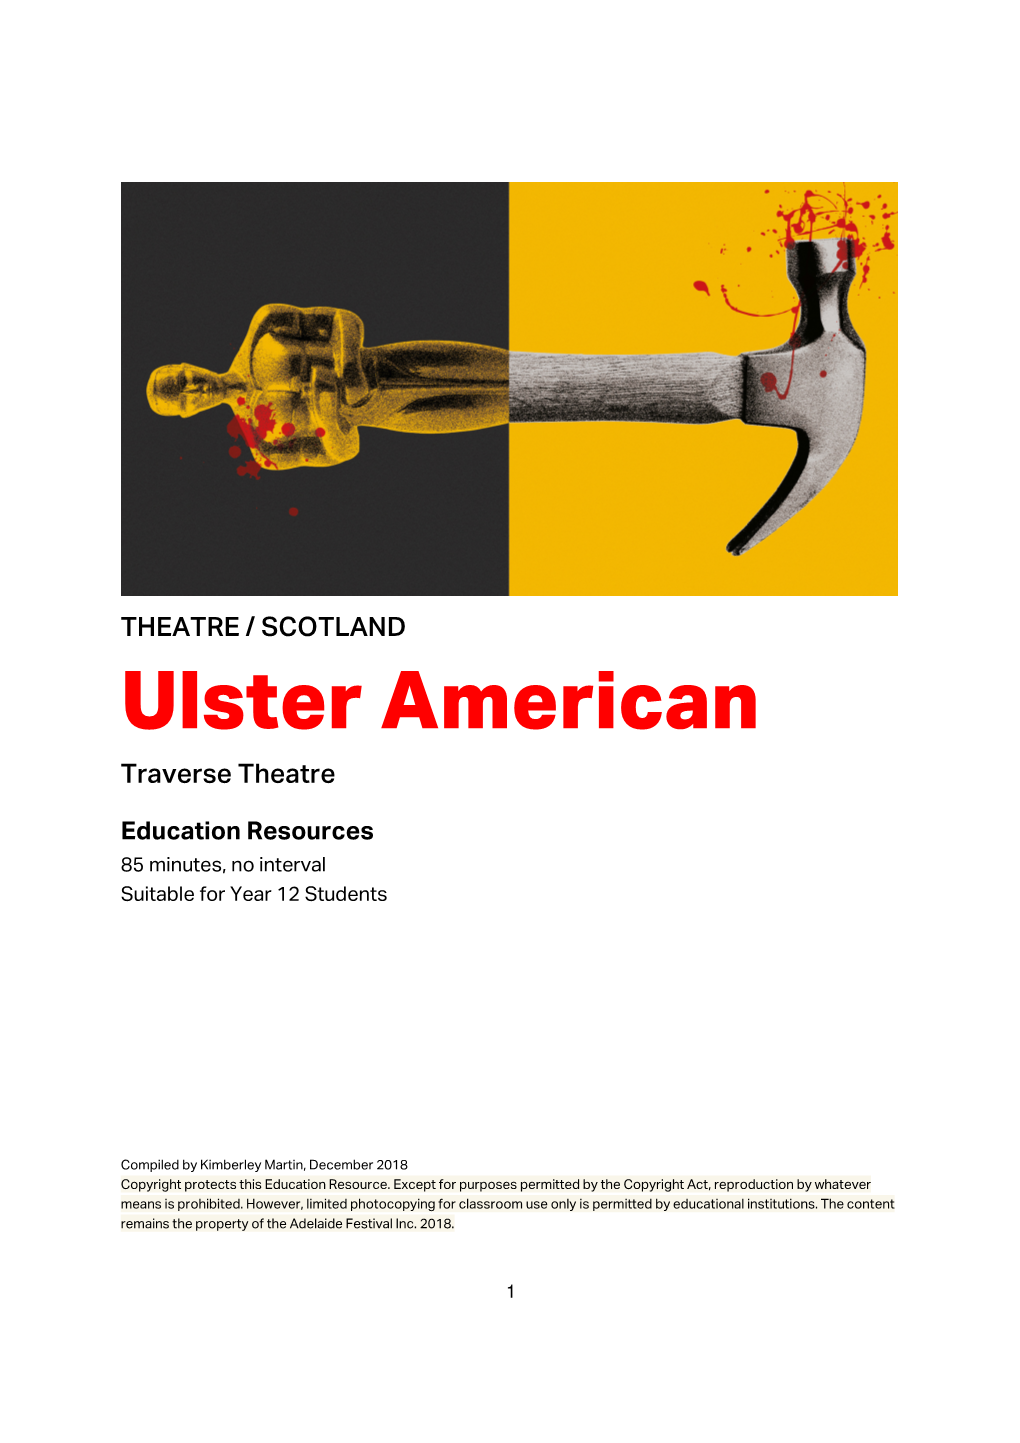 THEATRE / SCOTLAND Ulster American Traverse Theatre